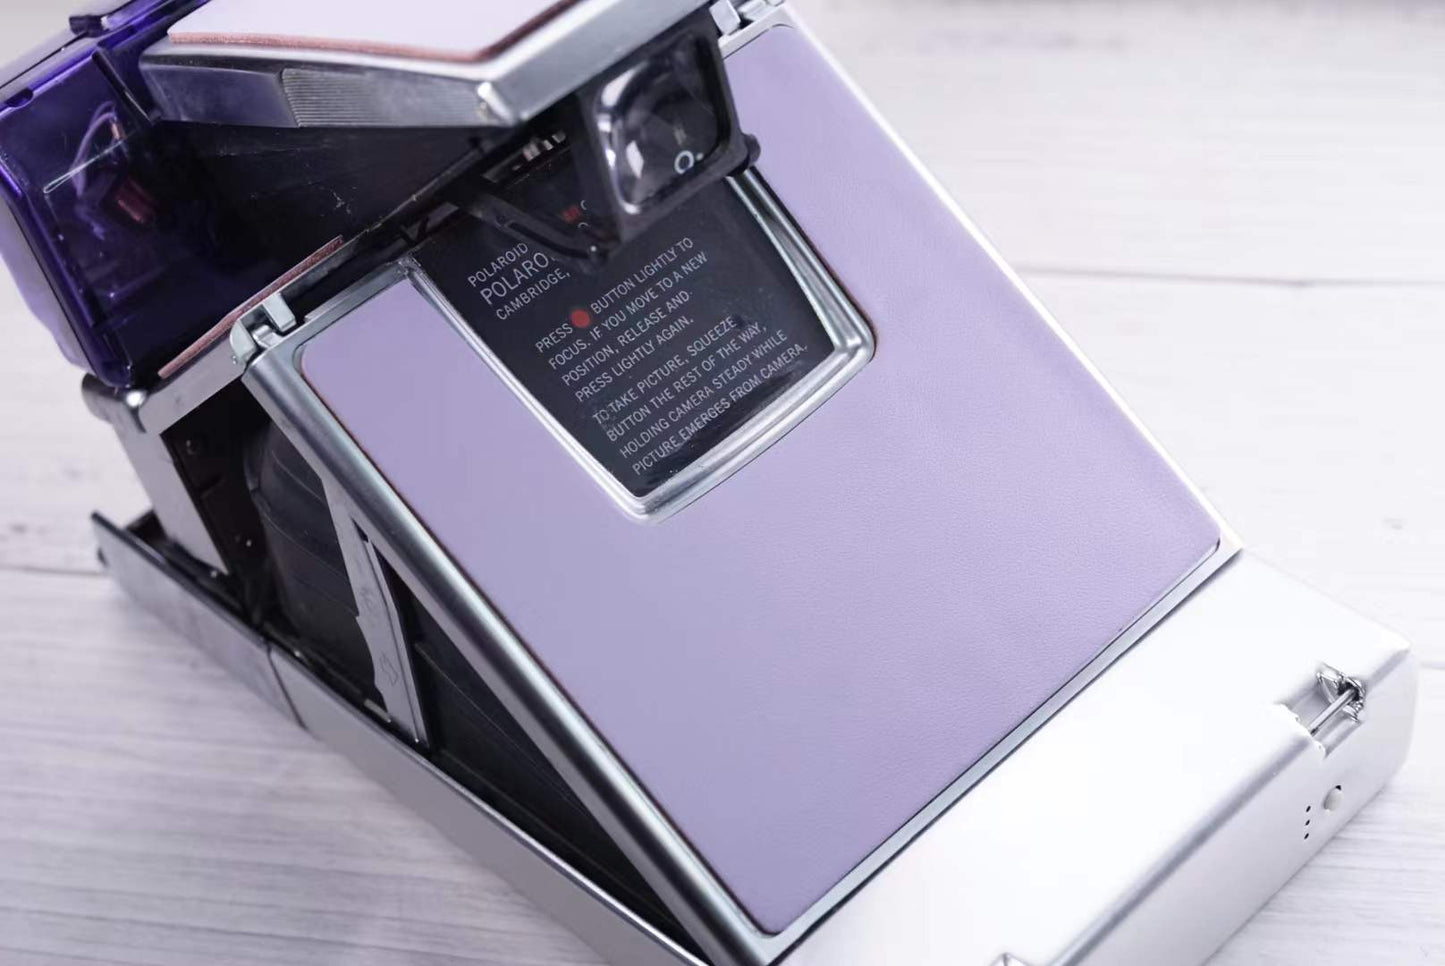 宝丽来Polaroid SX70 SONAR With 电源后背Power kit 3.0 and camera bag